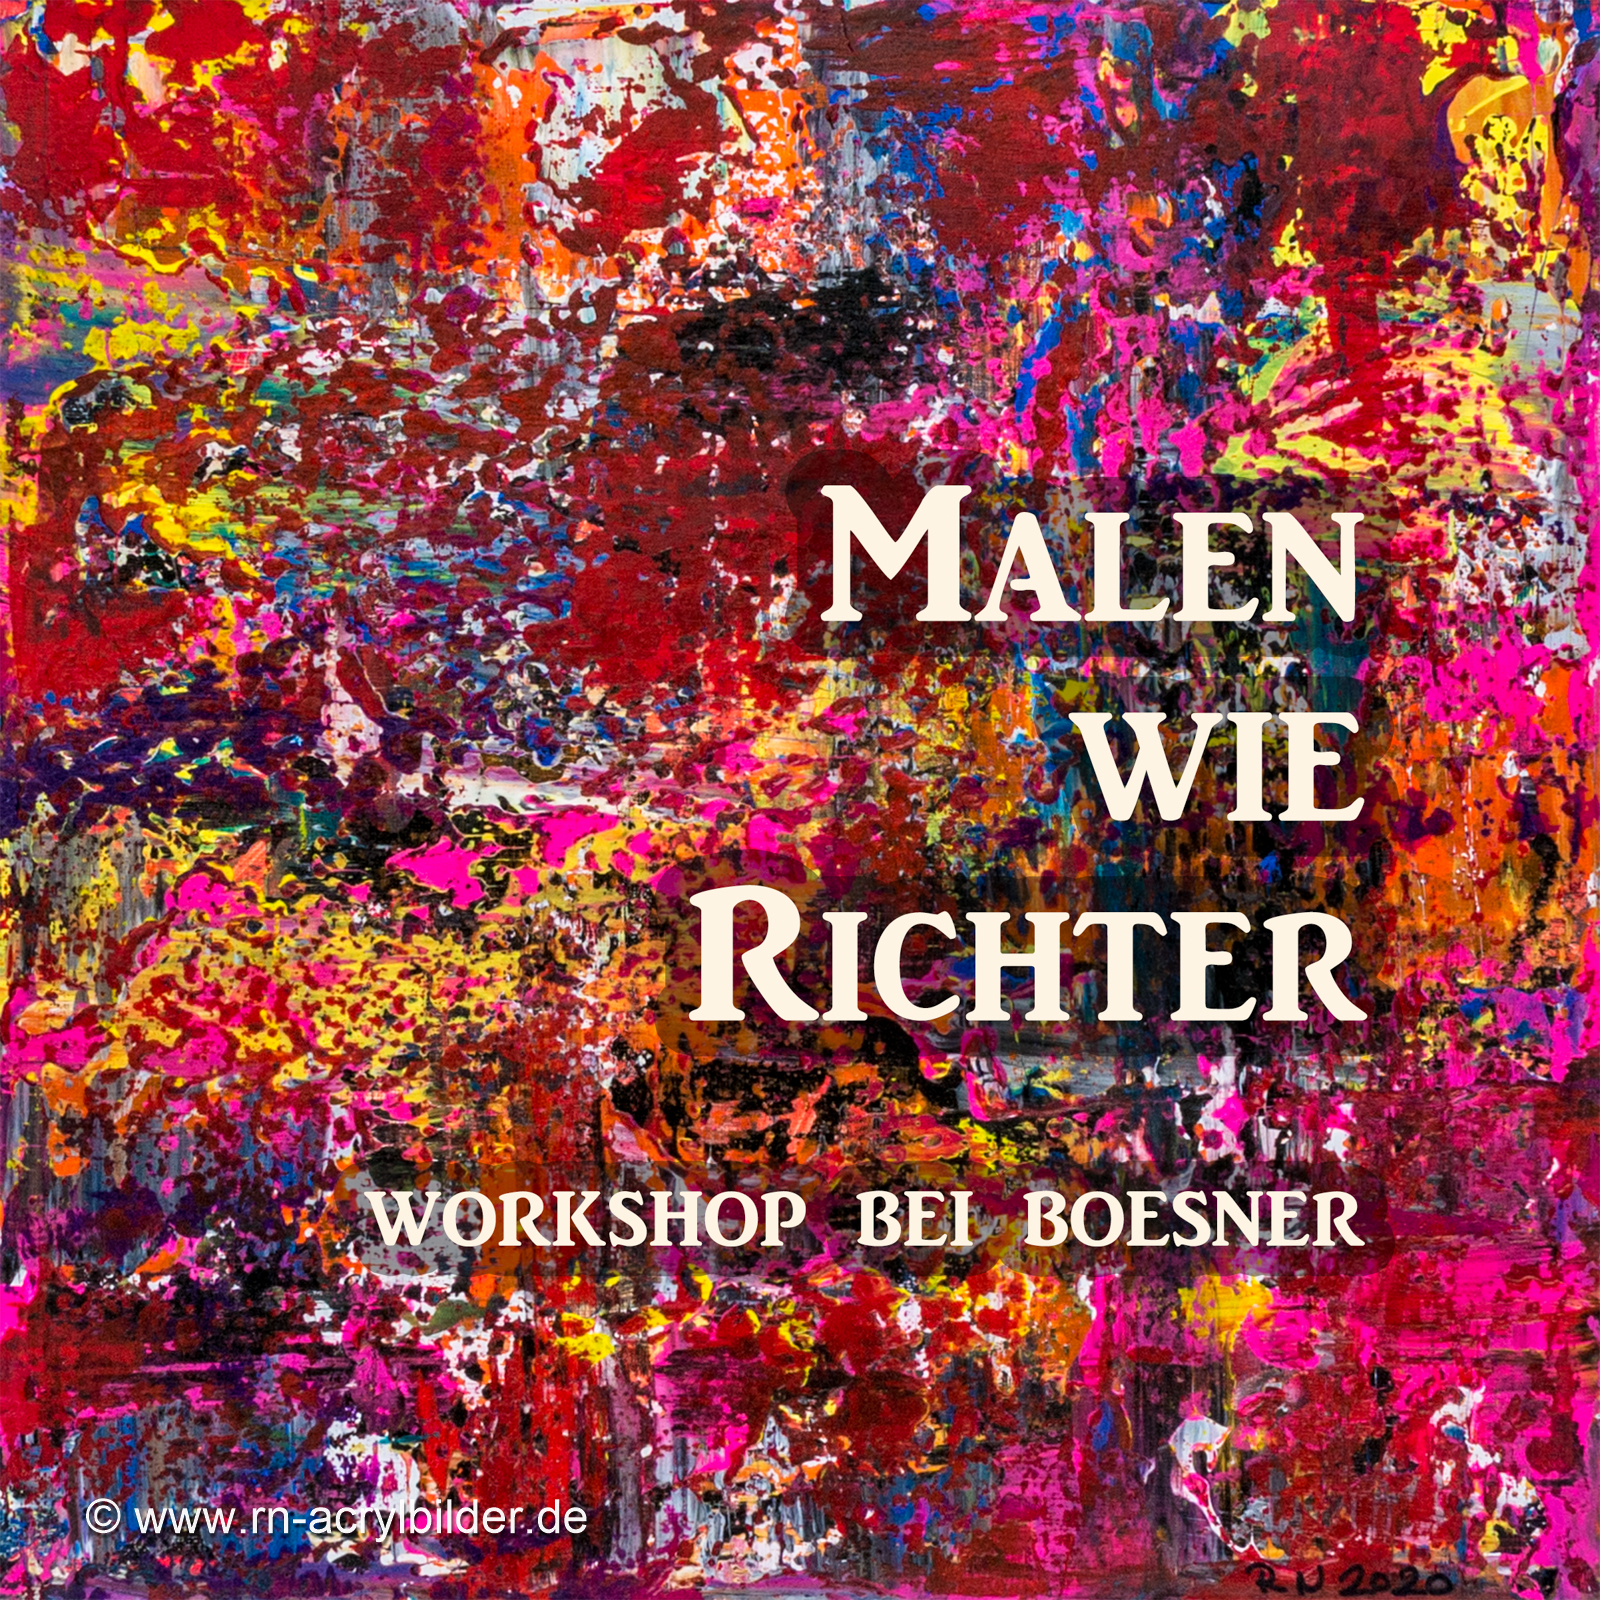 Workshop, Malen wie Richter, Boesner, Münster